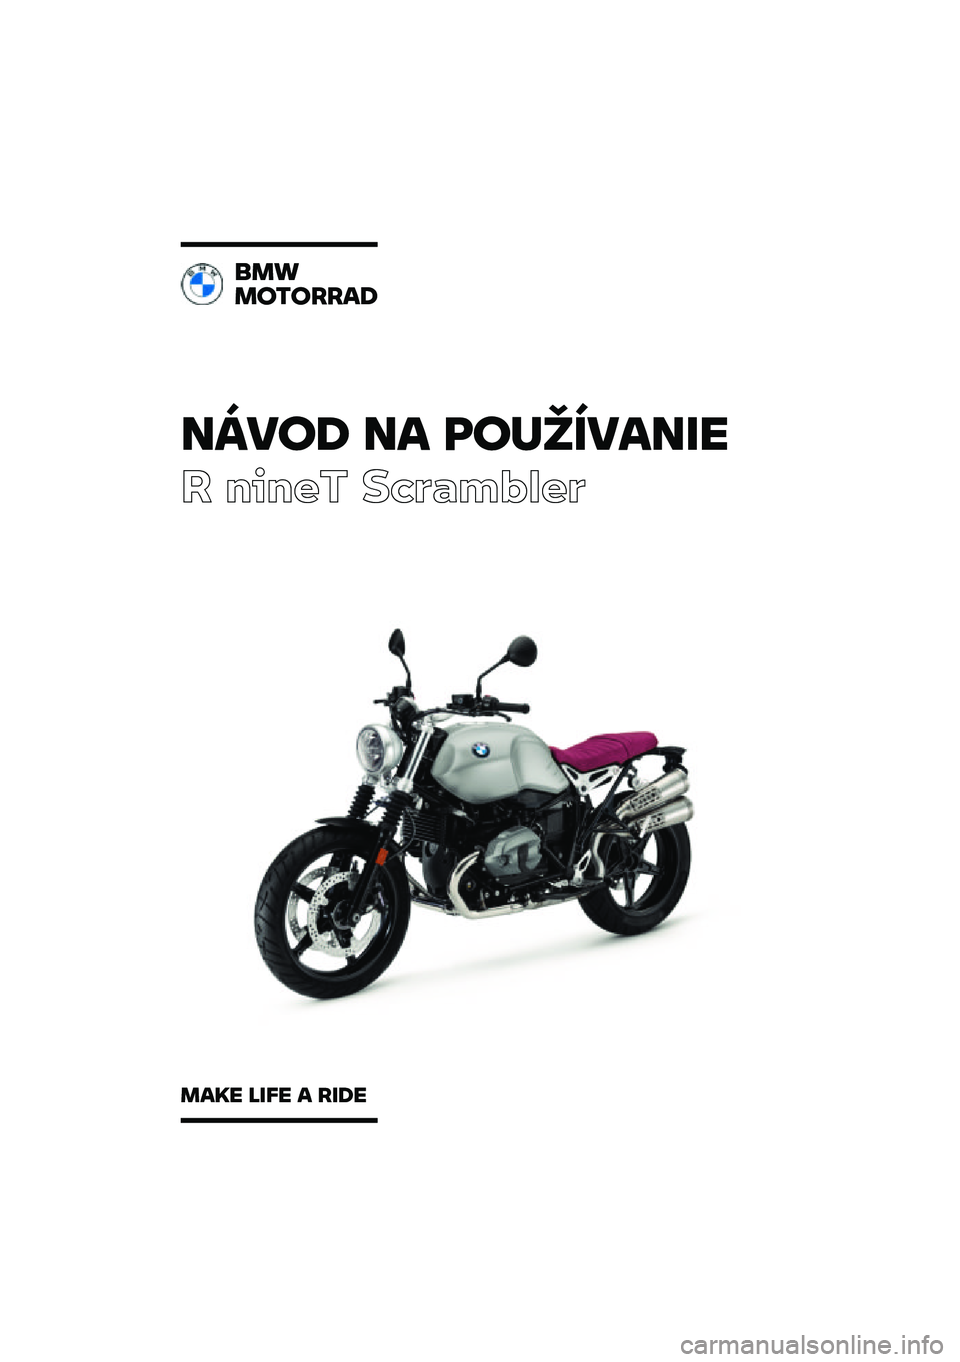 BMW MOTORRAD R NINE T SCRAMBLER 2021  Návod na používanie (in Slovak) �����\b �� �	��
�������
� ����� ��\b�	�
��\f�
��	
���
��������\b
���� ���� � ���\b� 